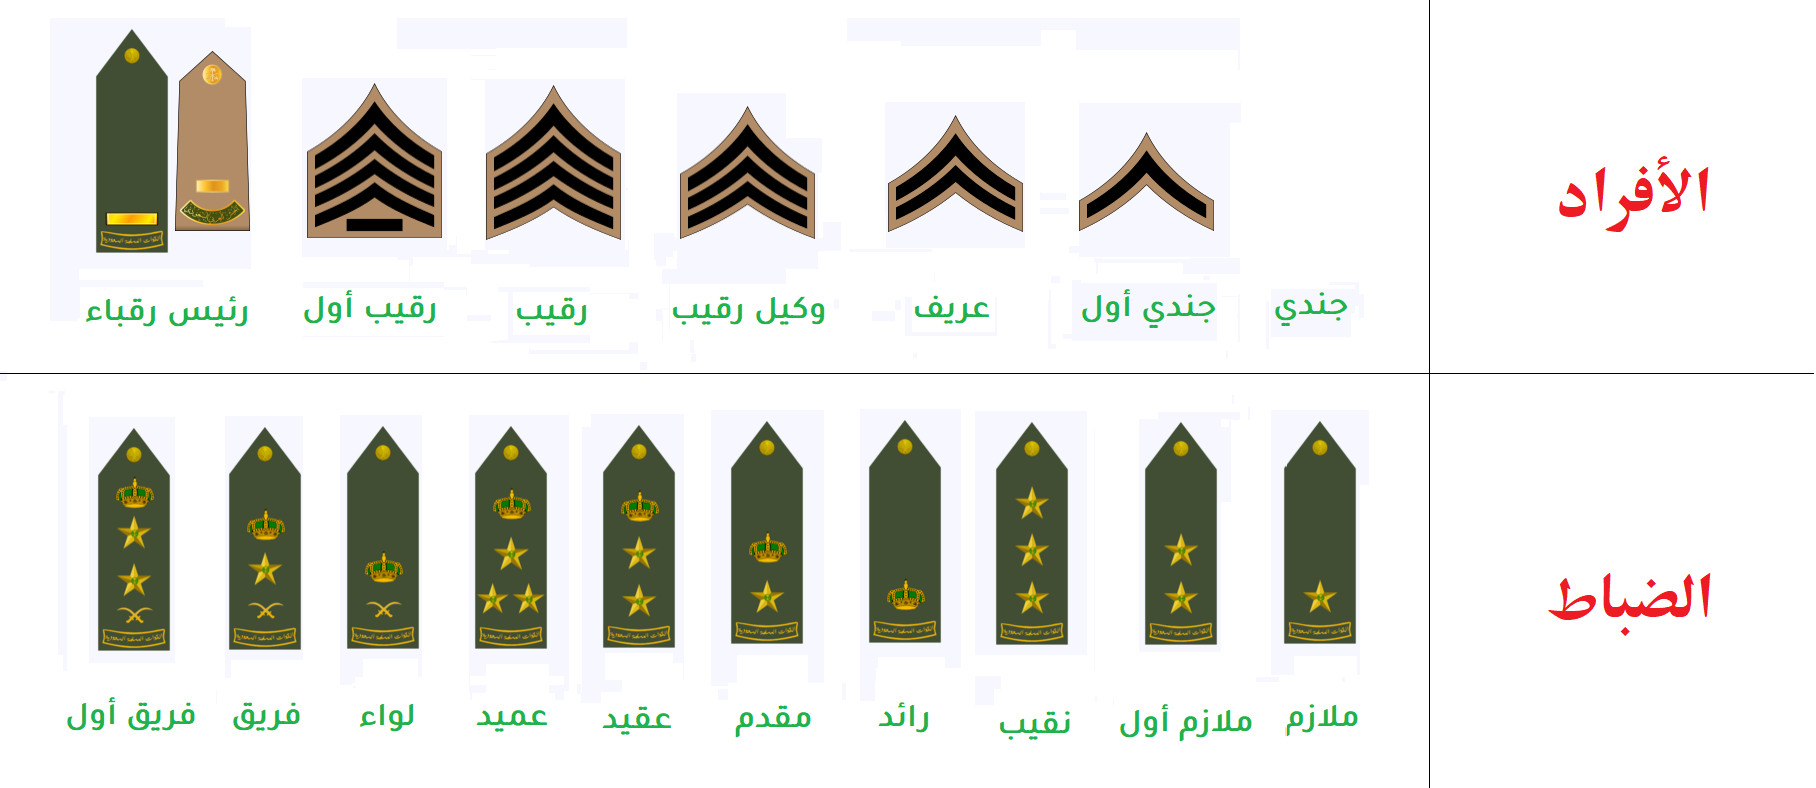 صورة الرتب العسكرية السعودية بالترتيب ومدة كل رتبه